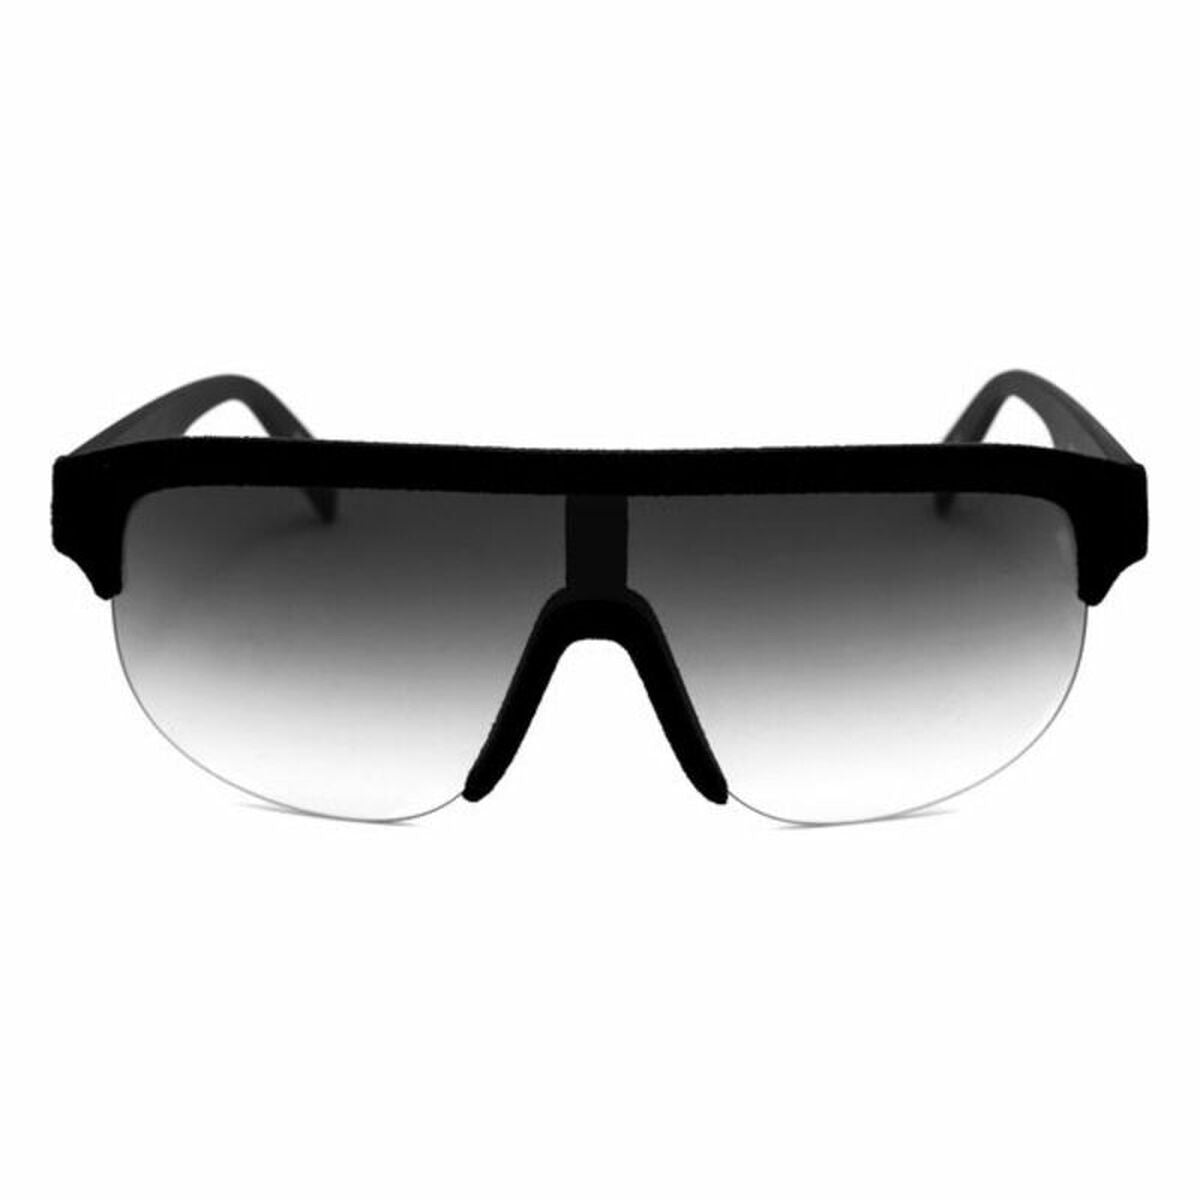 Unisex Sunglasses Italia Independent 0911V-009-000